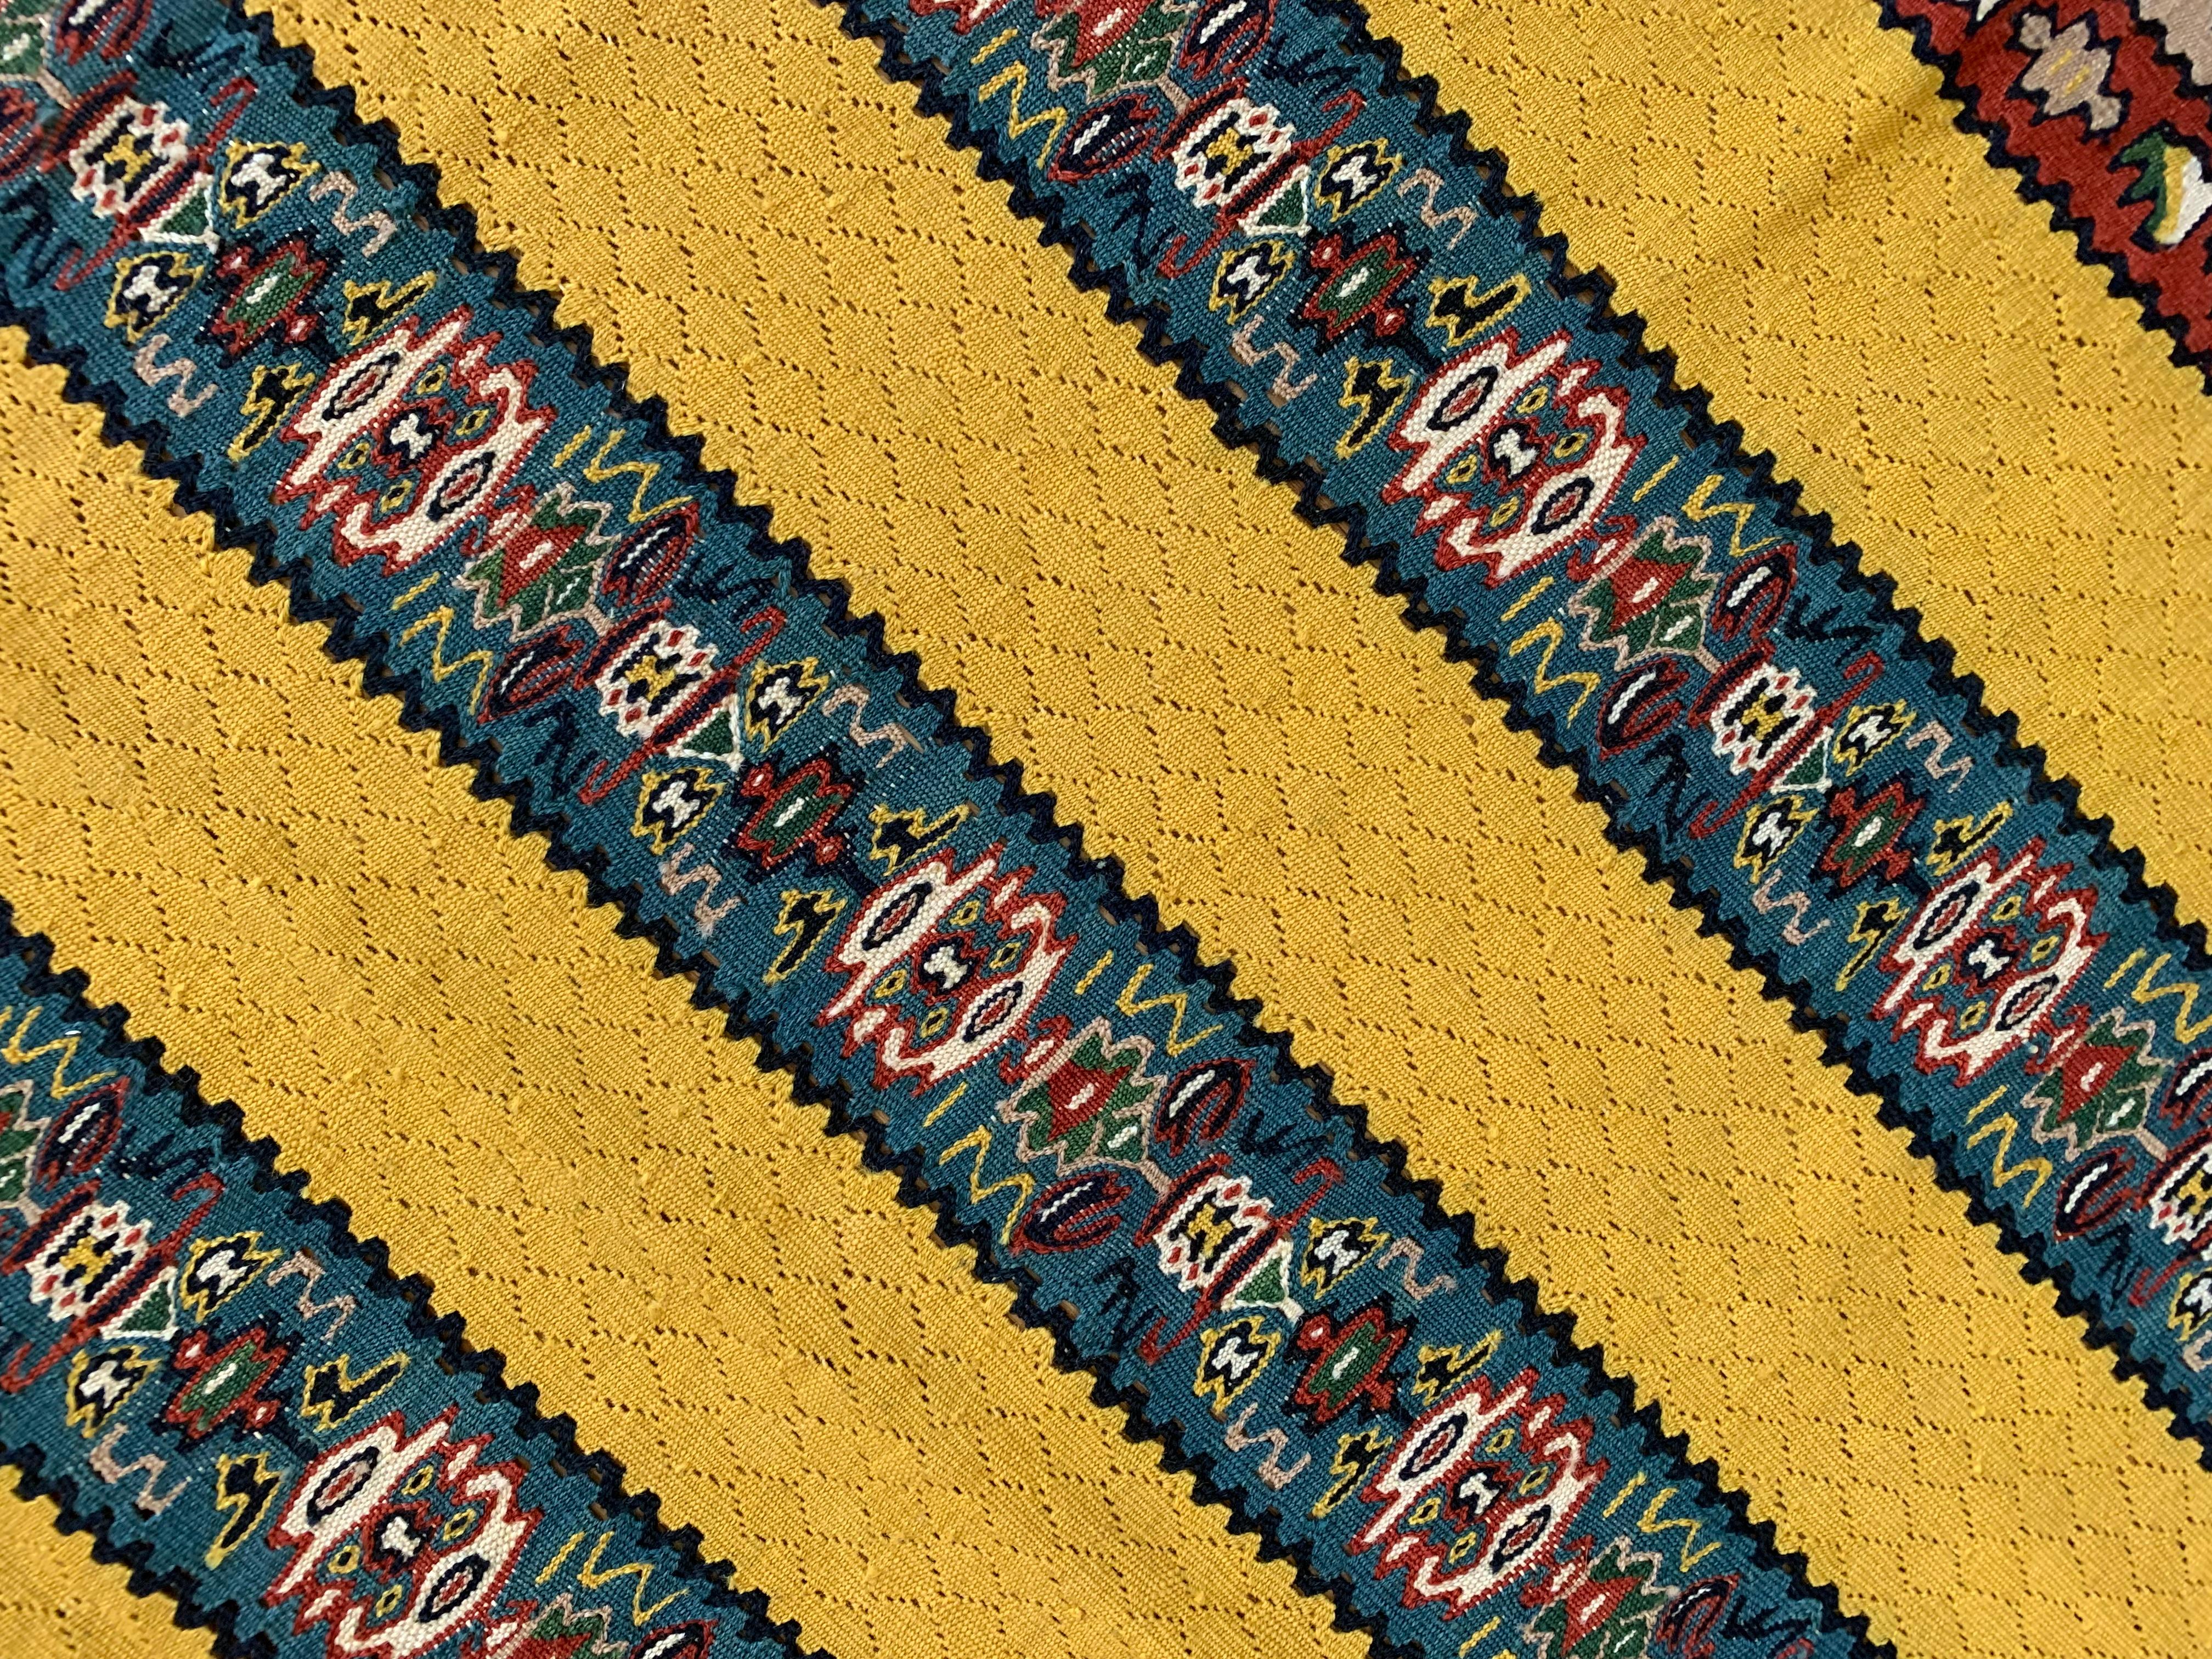 Ces kilims jaune vif sont de nouveaux tapis tissés à plat en laine et en soie, fabriqués au début du 21e siècle. Le motif présente un fond jaune avec quatre panneaux à rayures décoratives qui ont été tissés avec des motifs géométriques complexes. Le